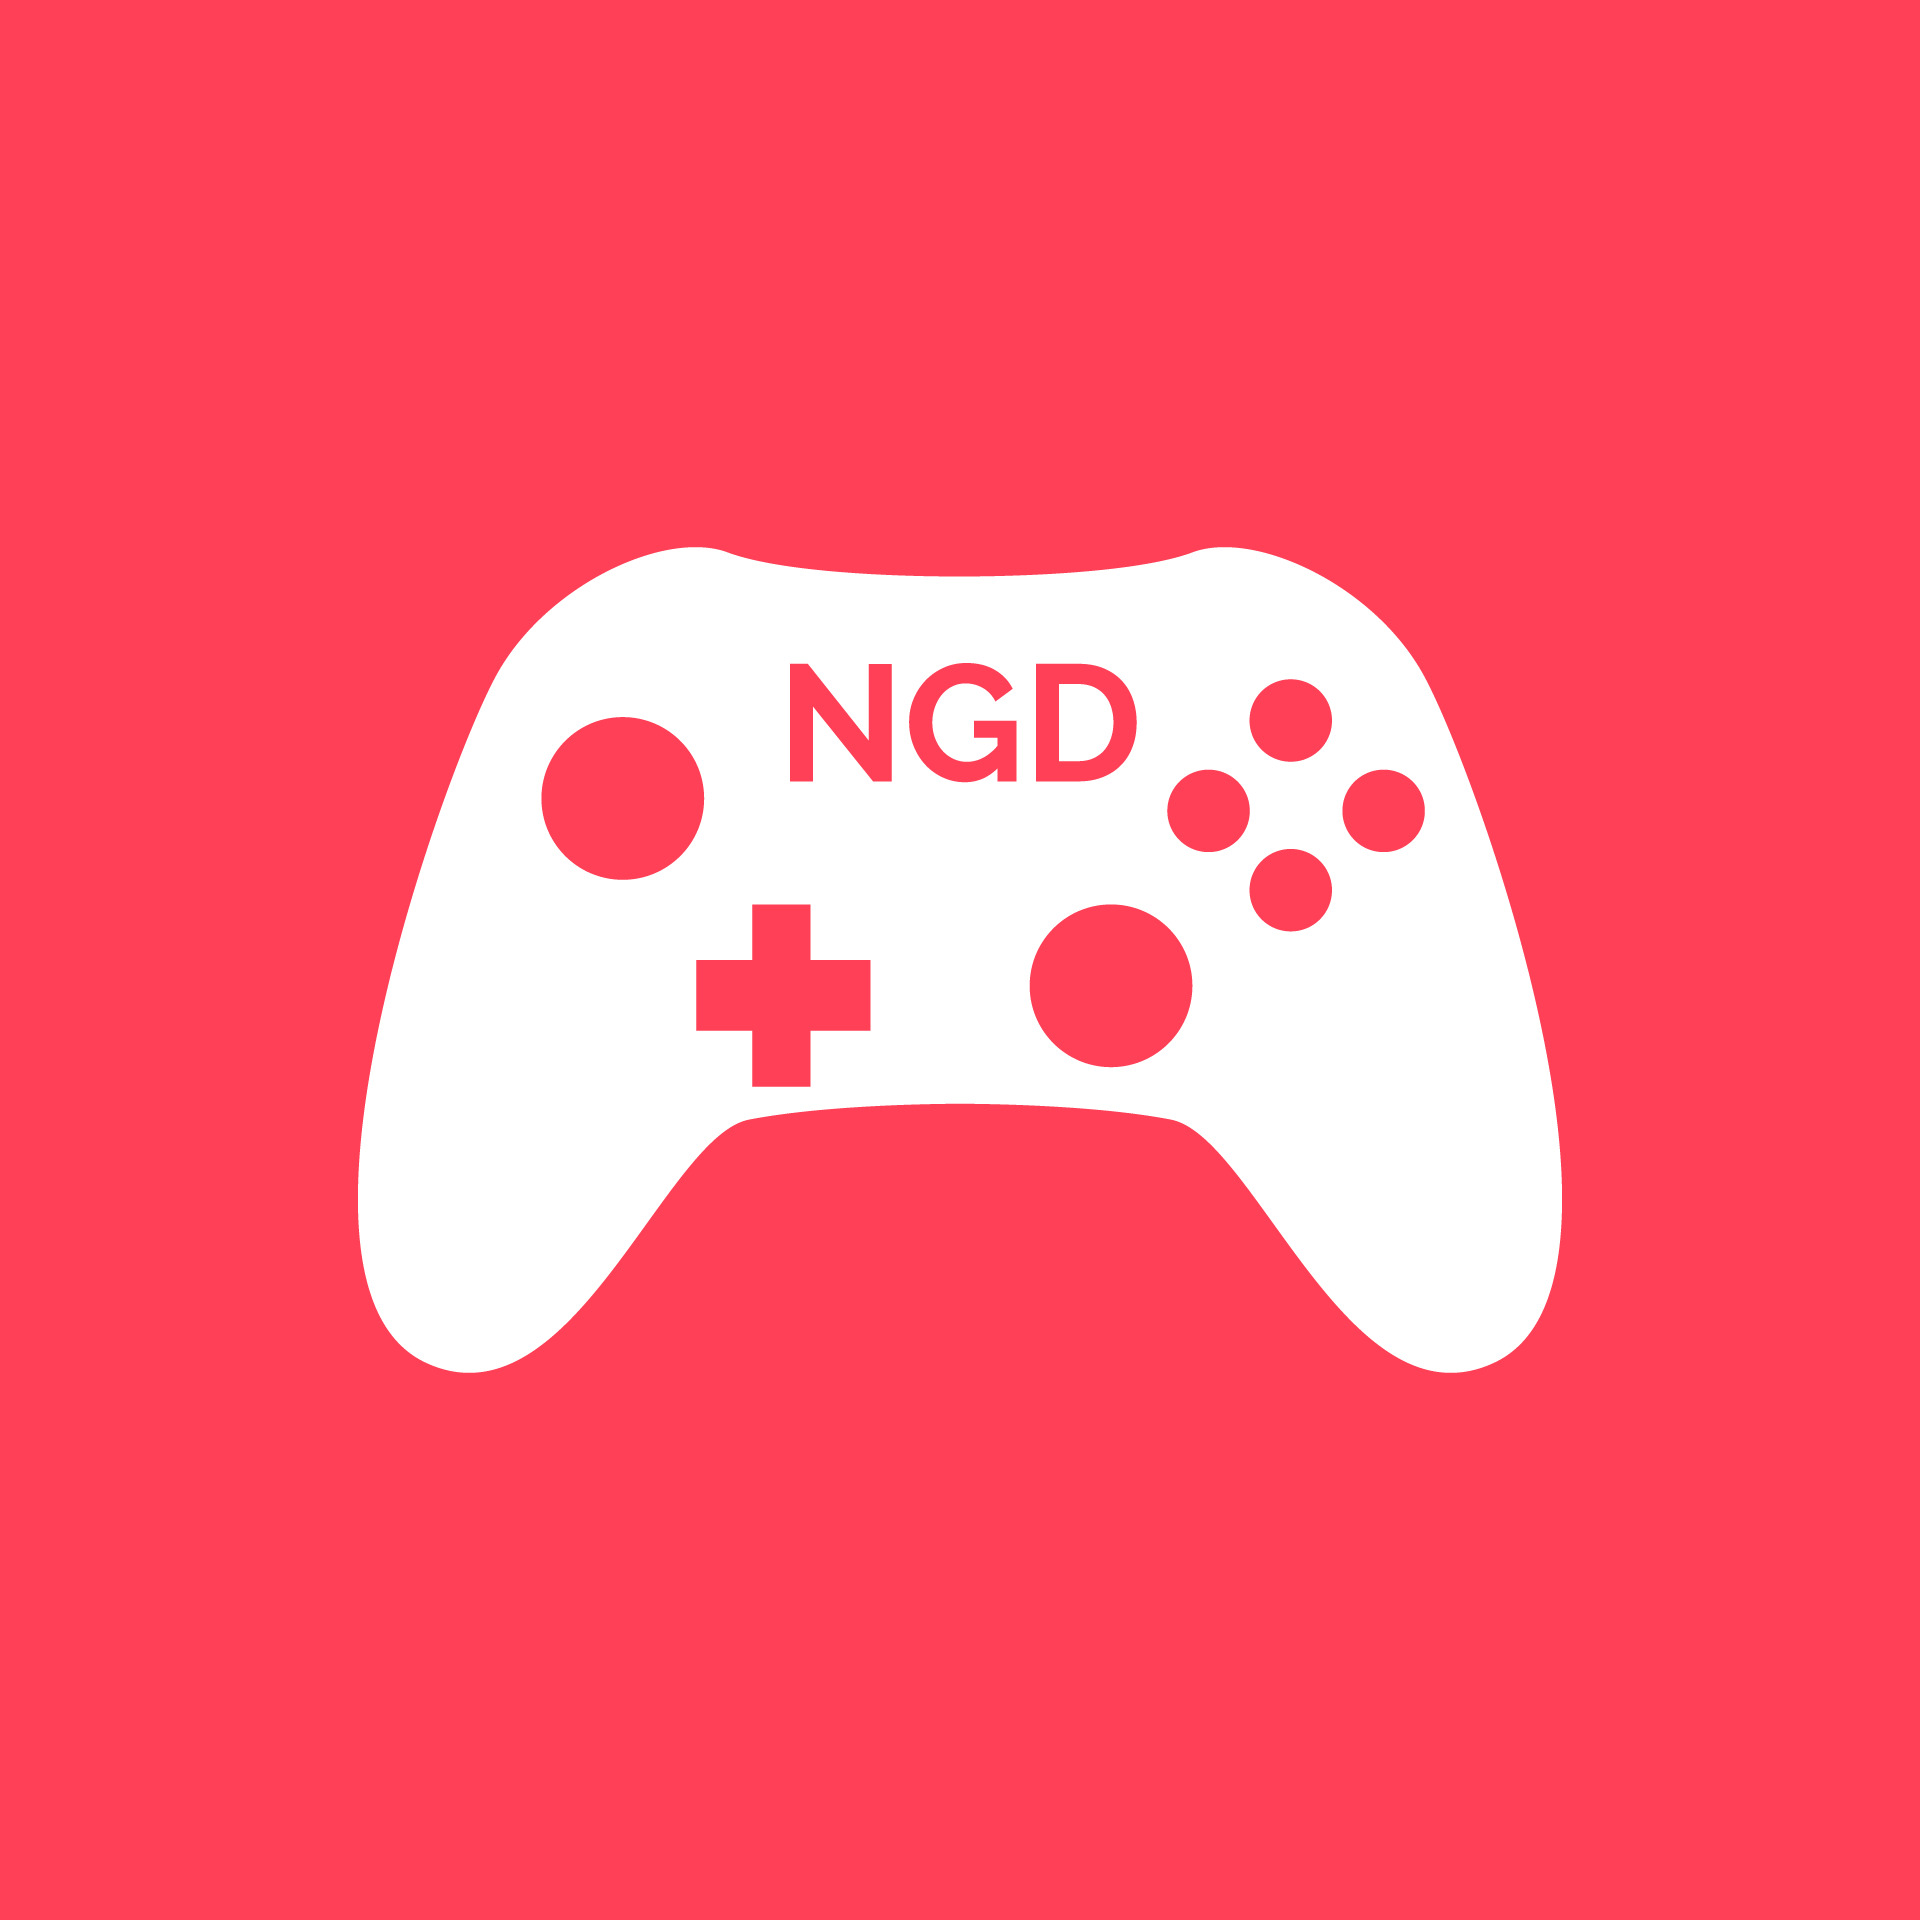 The NGD Logo